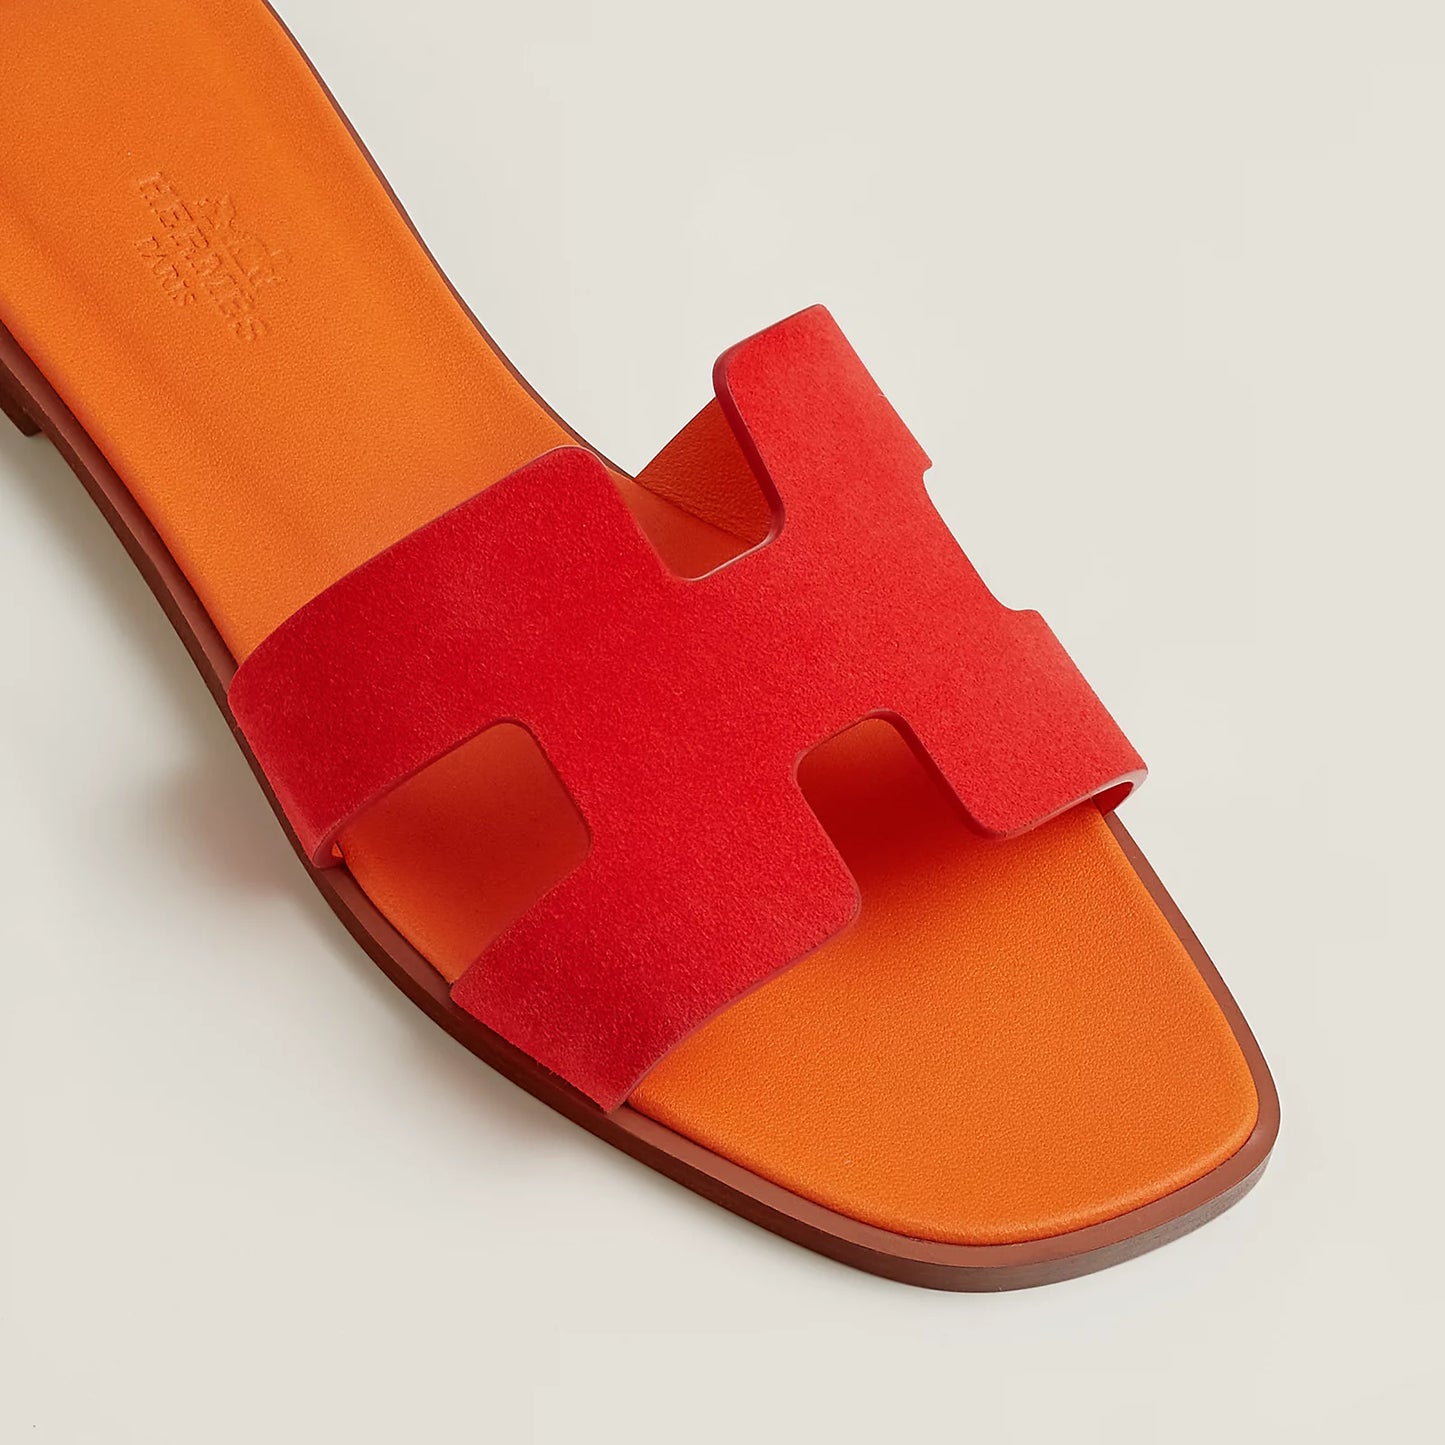 Hermes Oran Sandal “Rouge Écarlate”